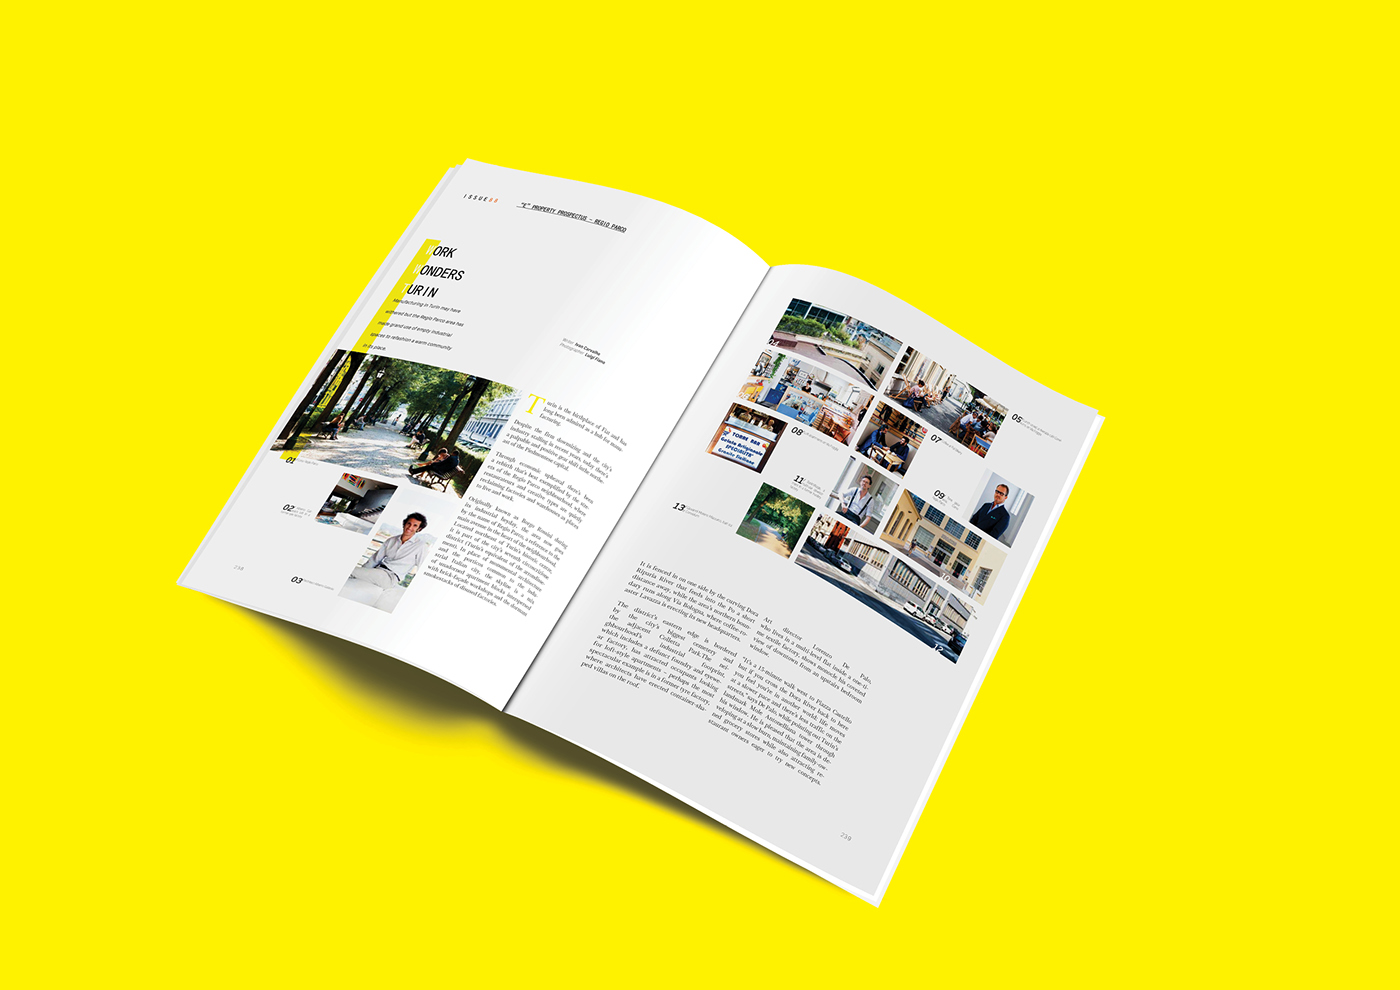 #rivista #problema #progettazione editoriale #griglia #impaginazione #disposizione #marca design #graphic